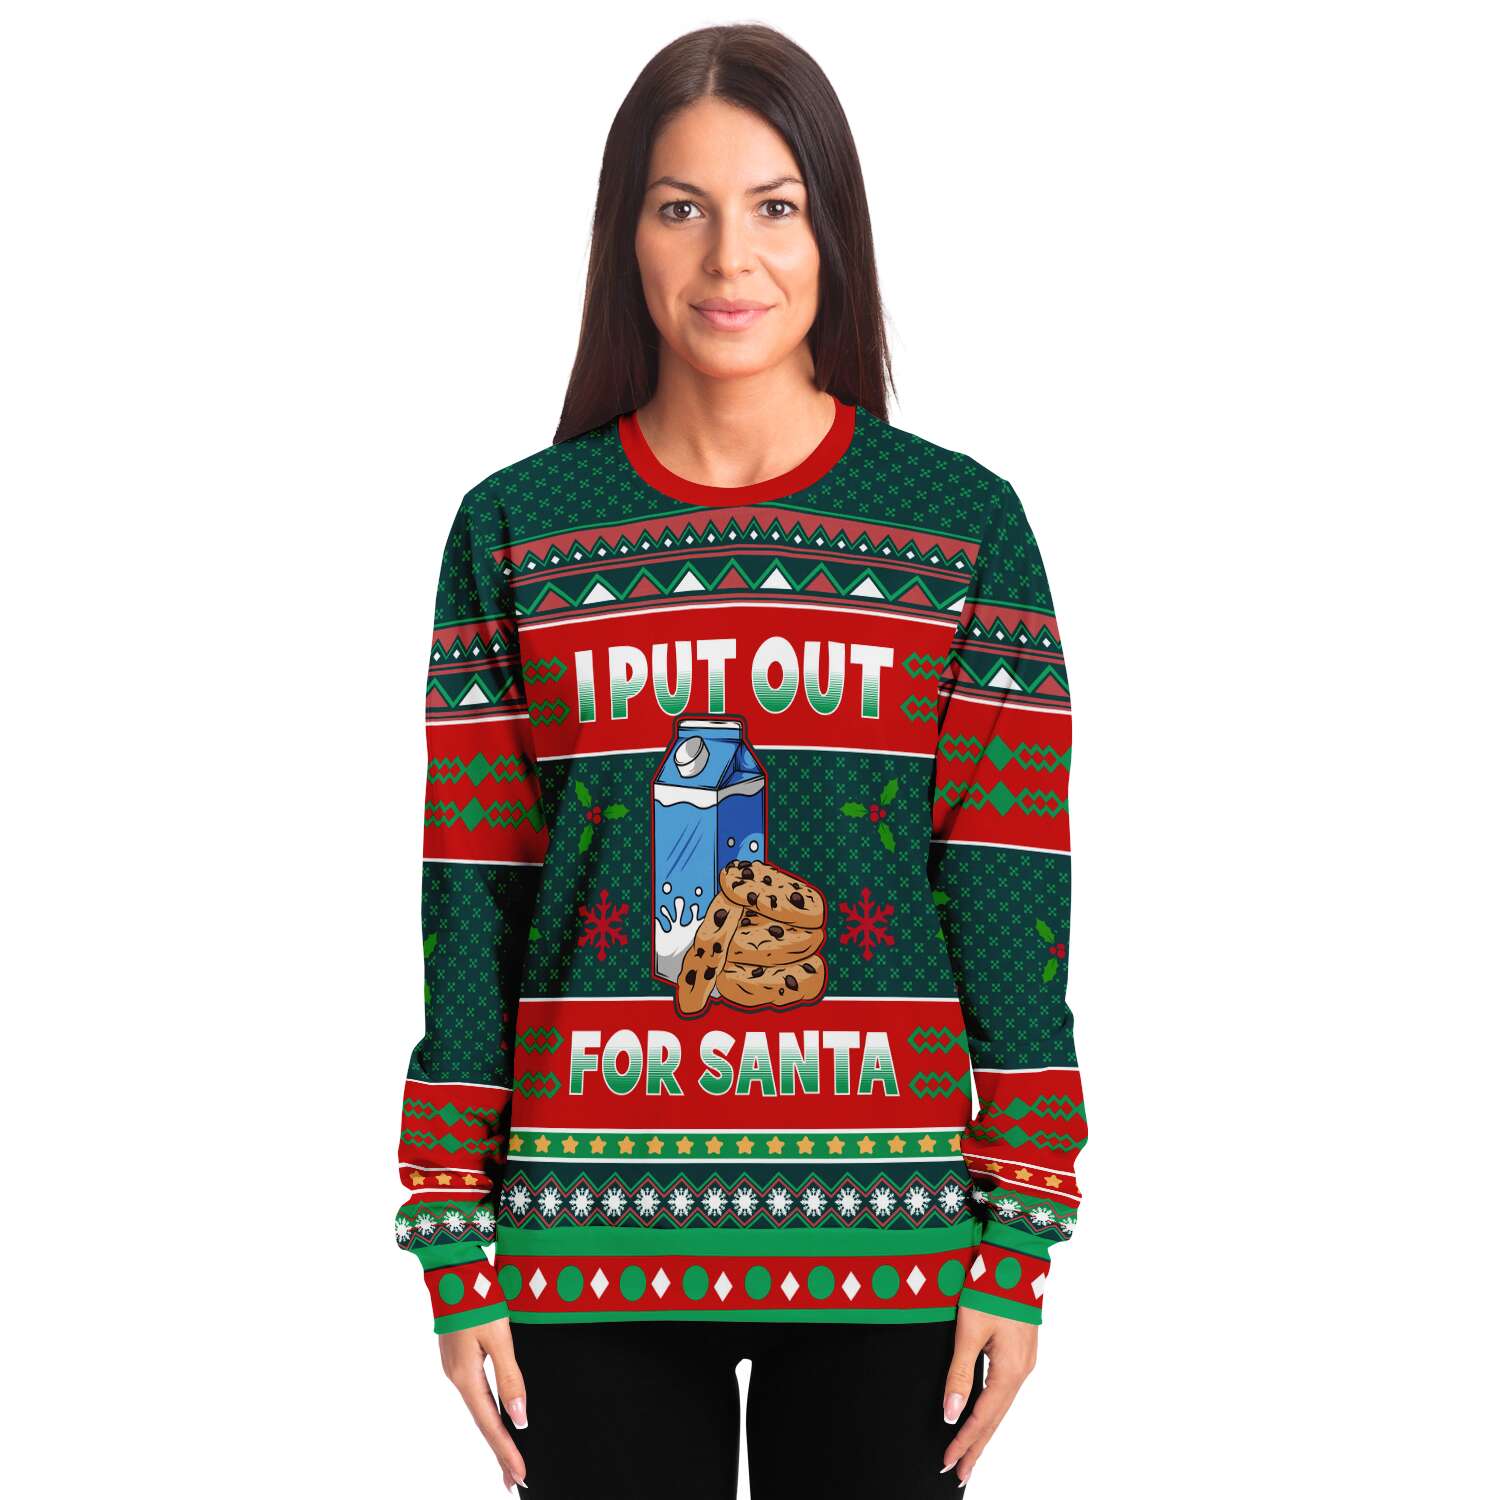 I Put Out For Santa Sweatshirt | Unisex Ugly Christmas Sweater, Xmas Sweater, Holiday Sweater, Festive Sweater, Funny Sweater, Funny Party Shirt